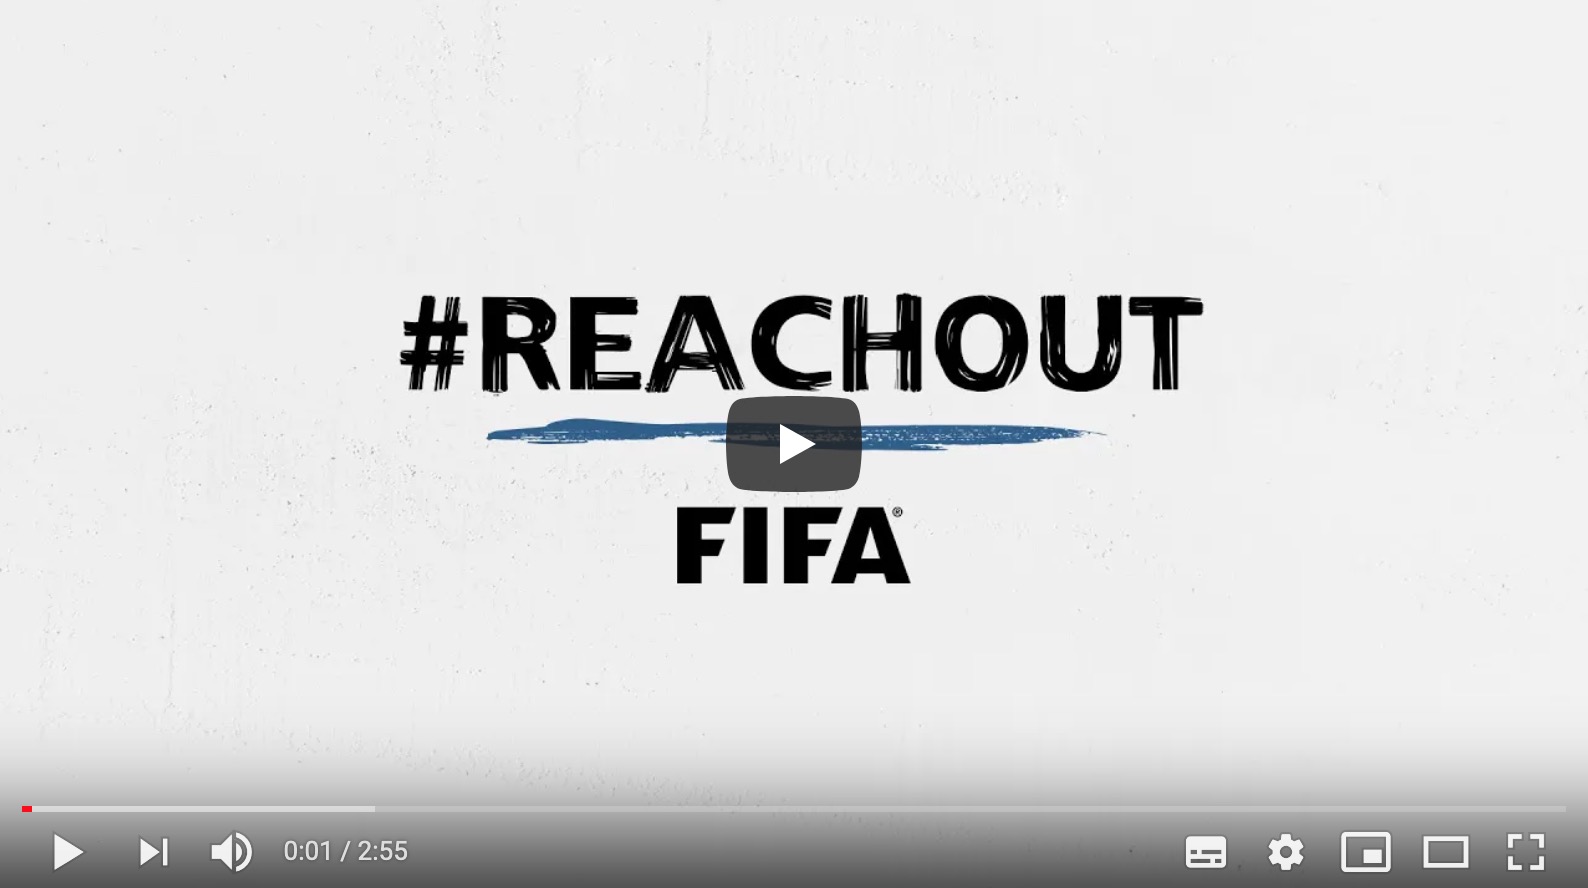 Wereldvoetbalbond FIFA heeft deze week de campagne #reachout